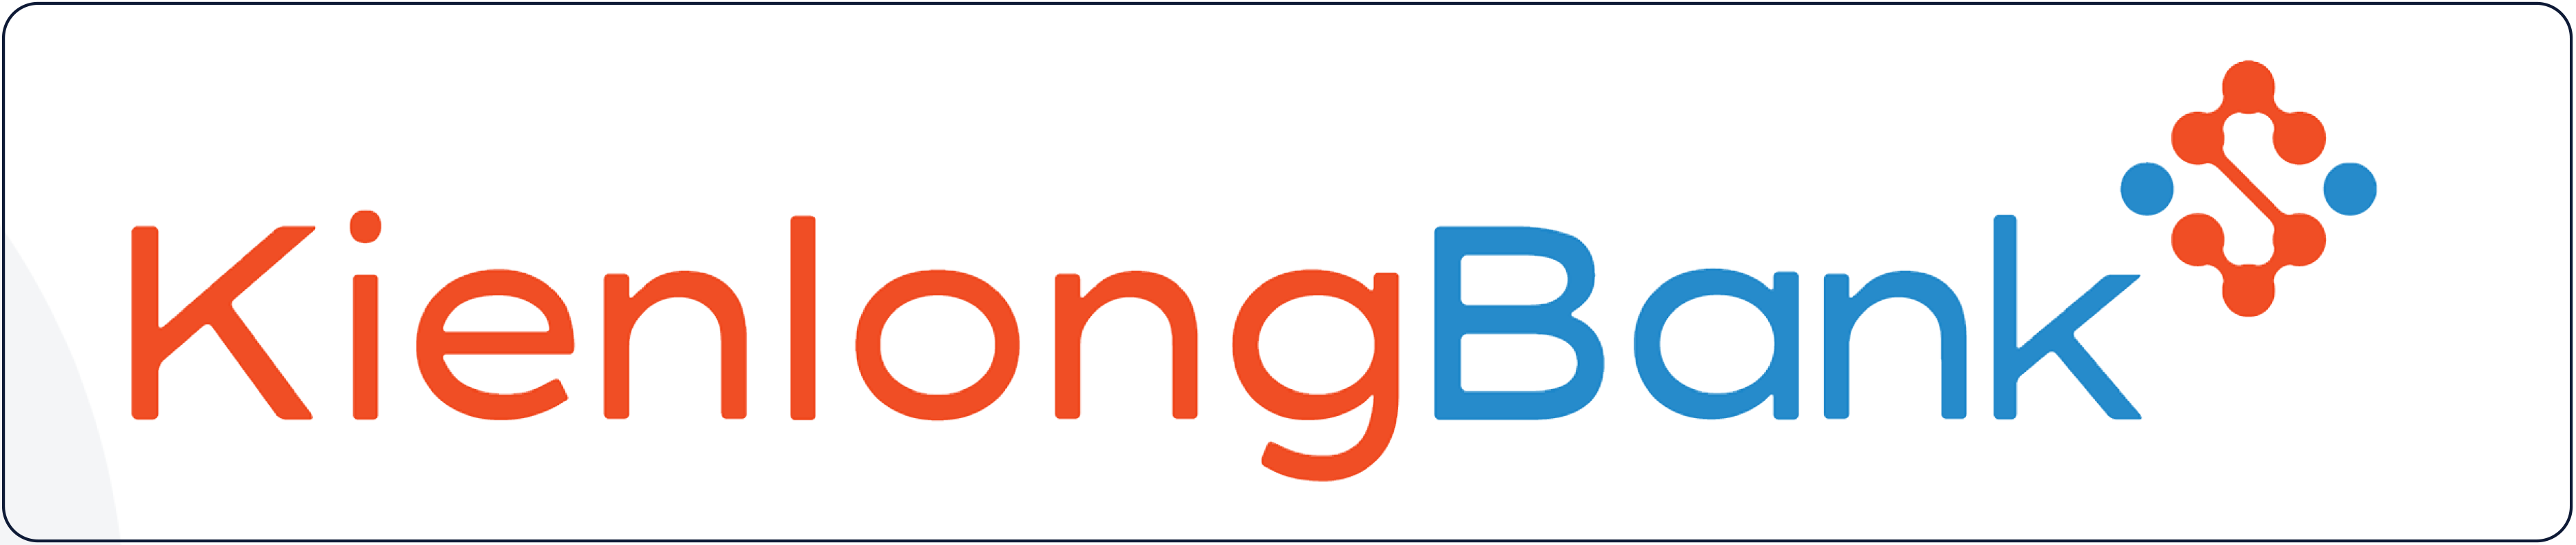 mau-sac-logo-kienlongbank-1